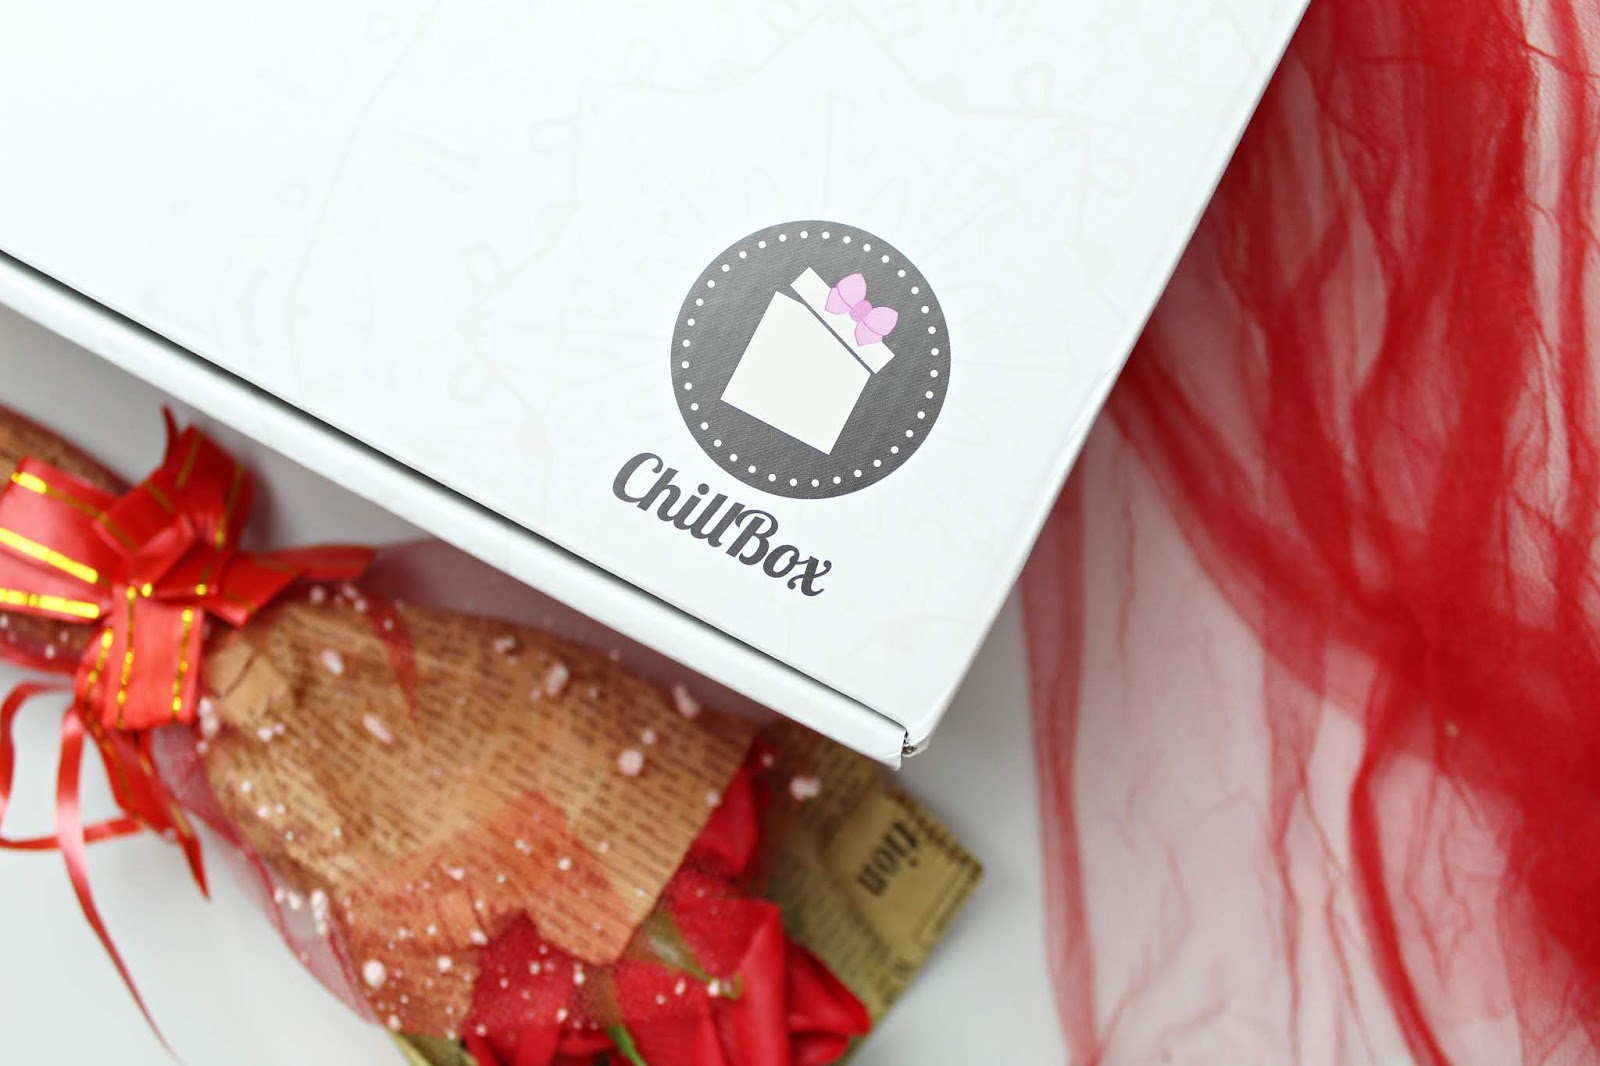 Malinowa miłość, czyli openbox ChillBox - luty 2019 | Zuzka Pisze